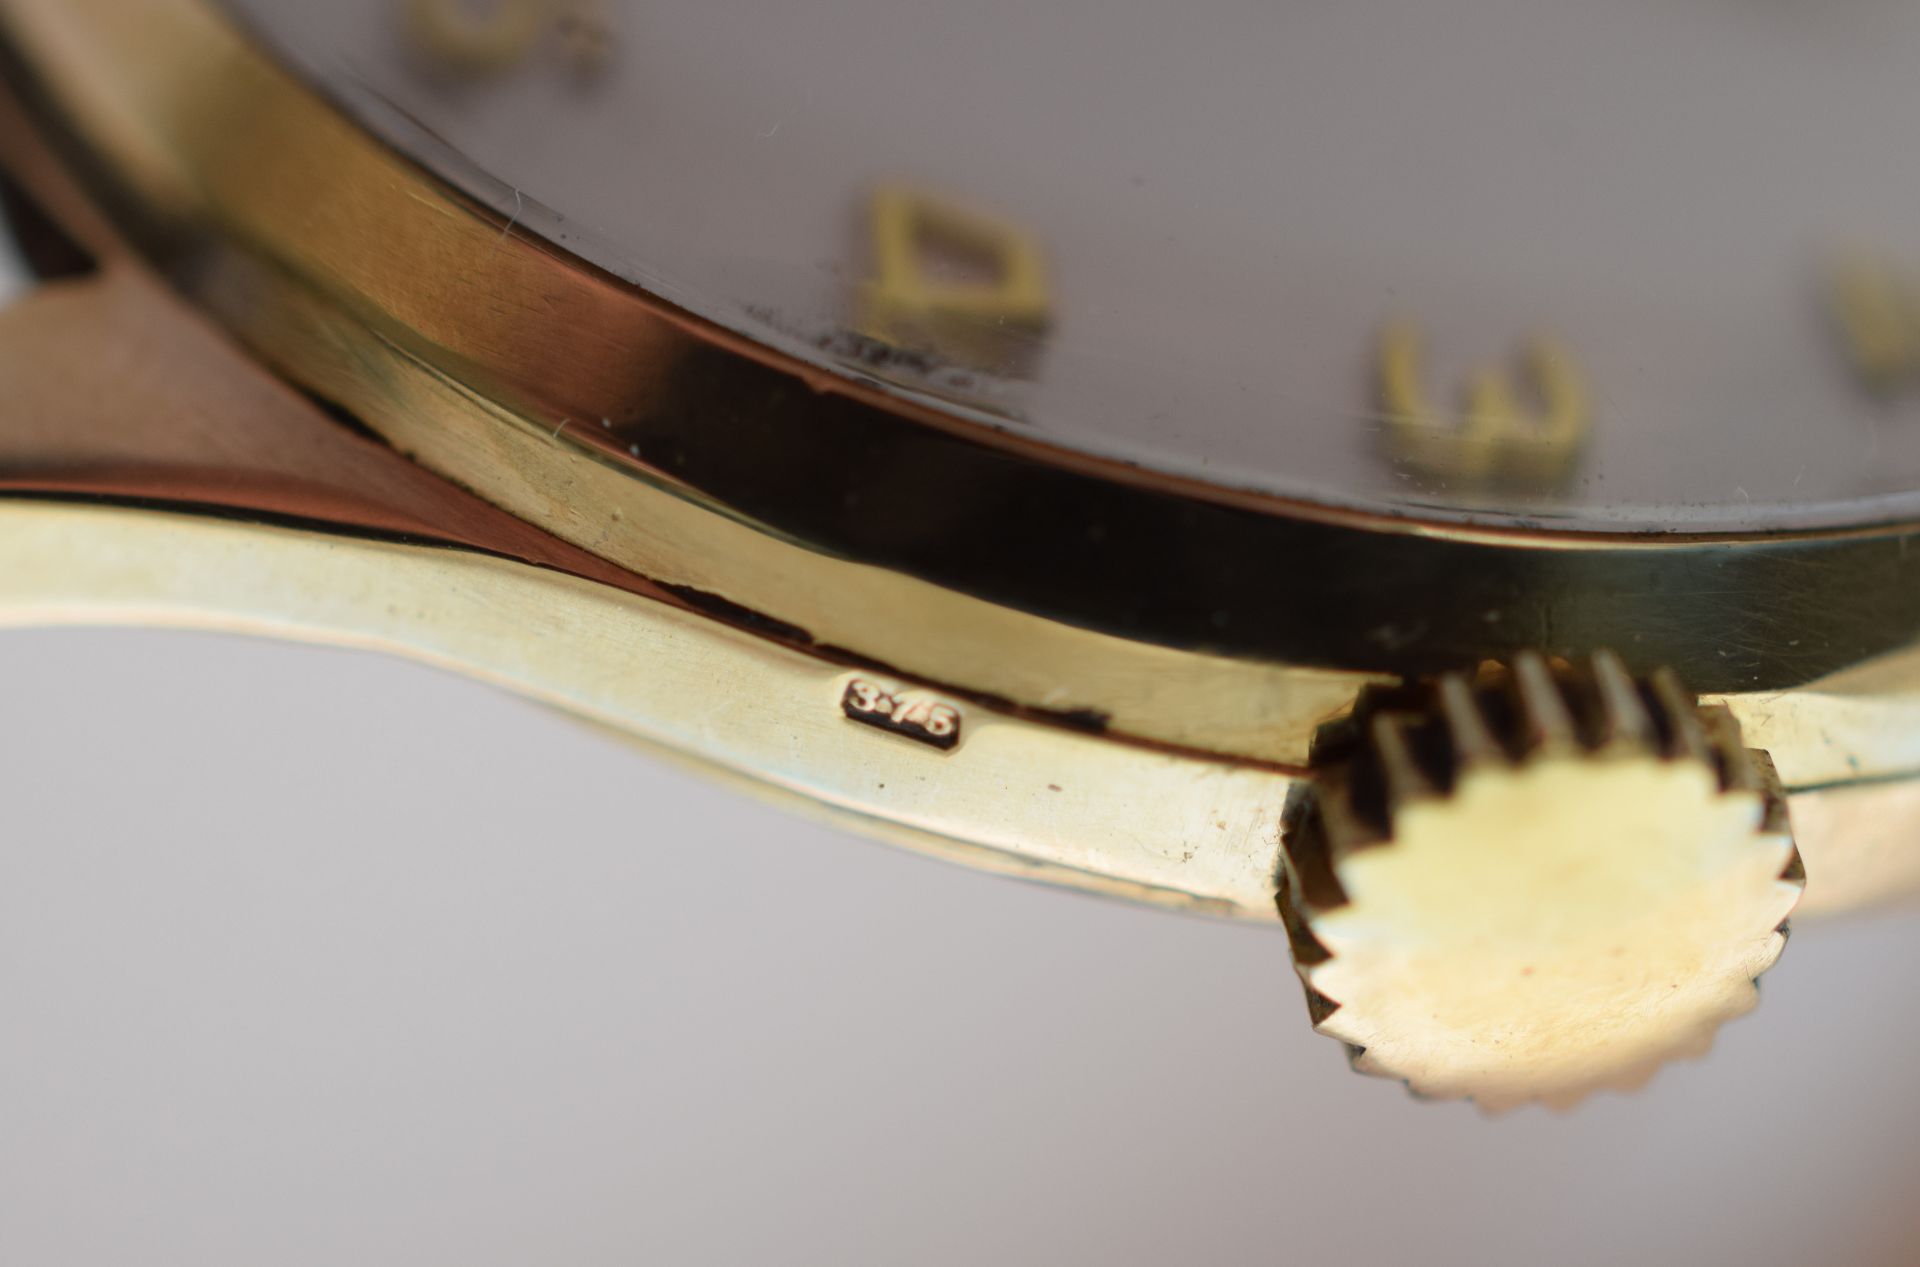 9ct Solid Gold Garrard Gentleman's Manual Wind Watch - Image 4 of 7